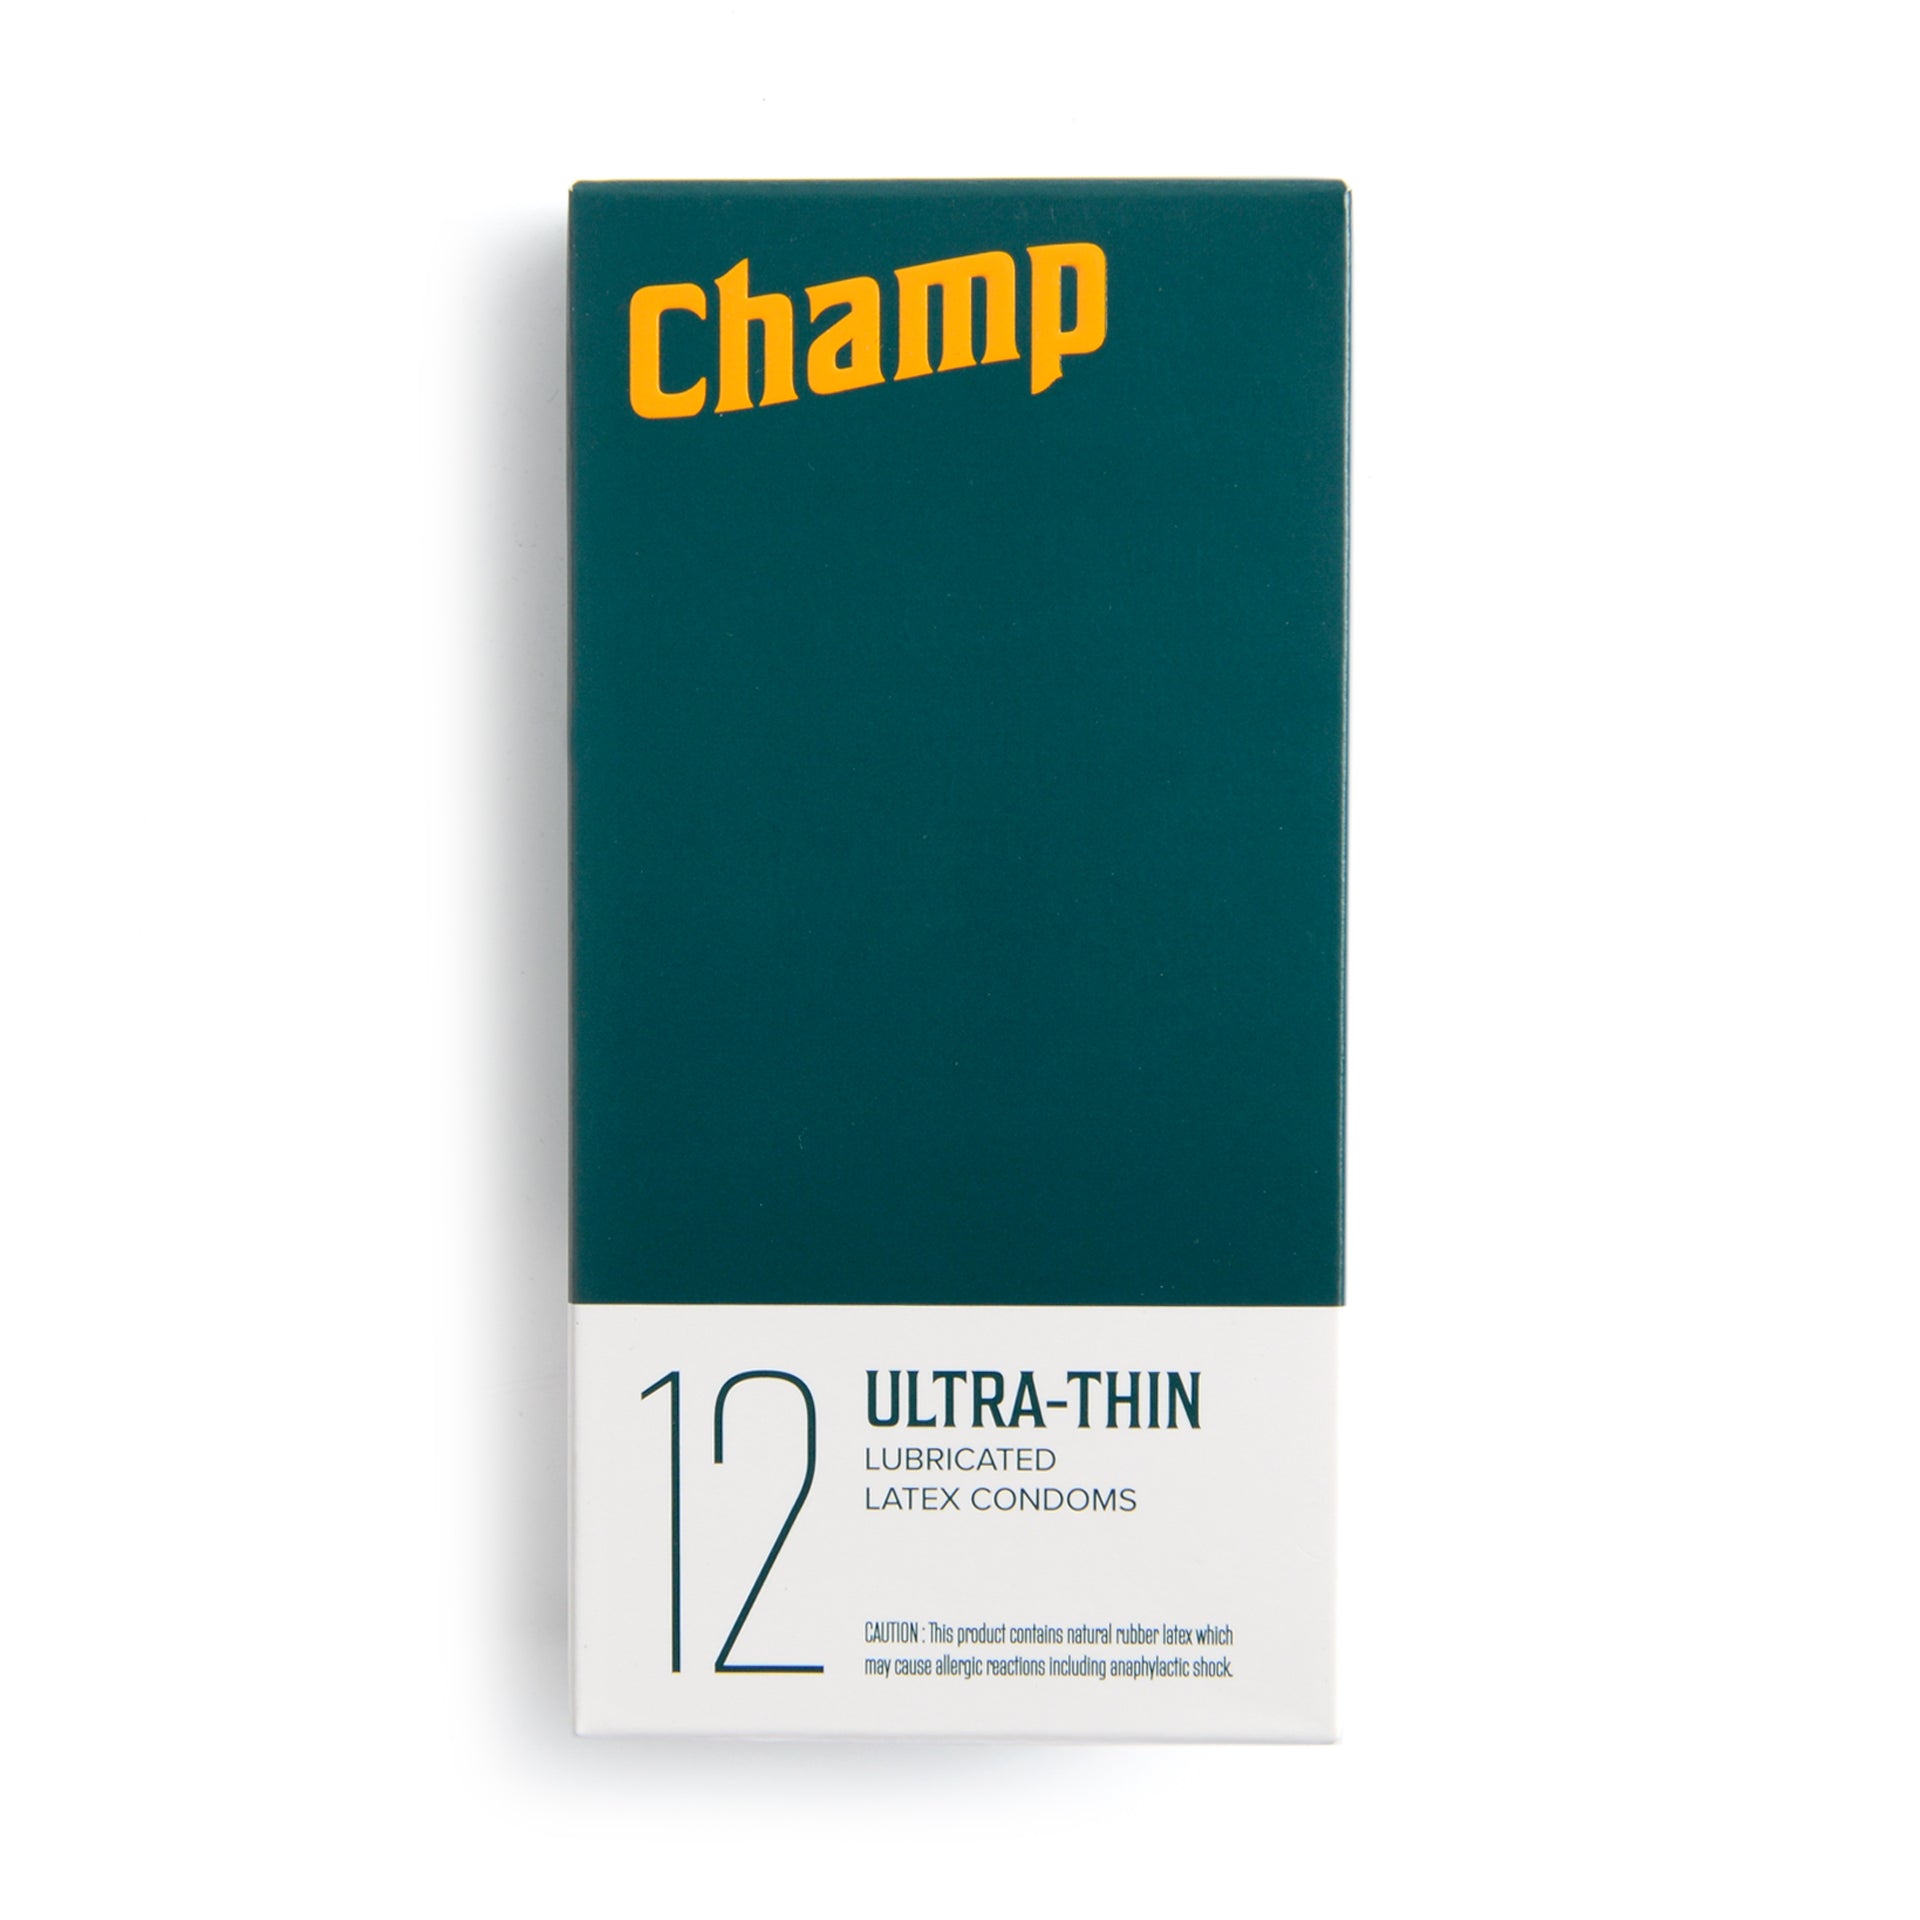 Champ Condoms | Uncrate, #Champ #Condoms #Uncrate